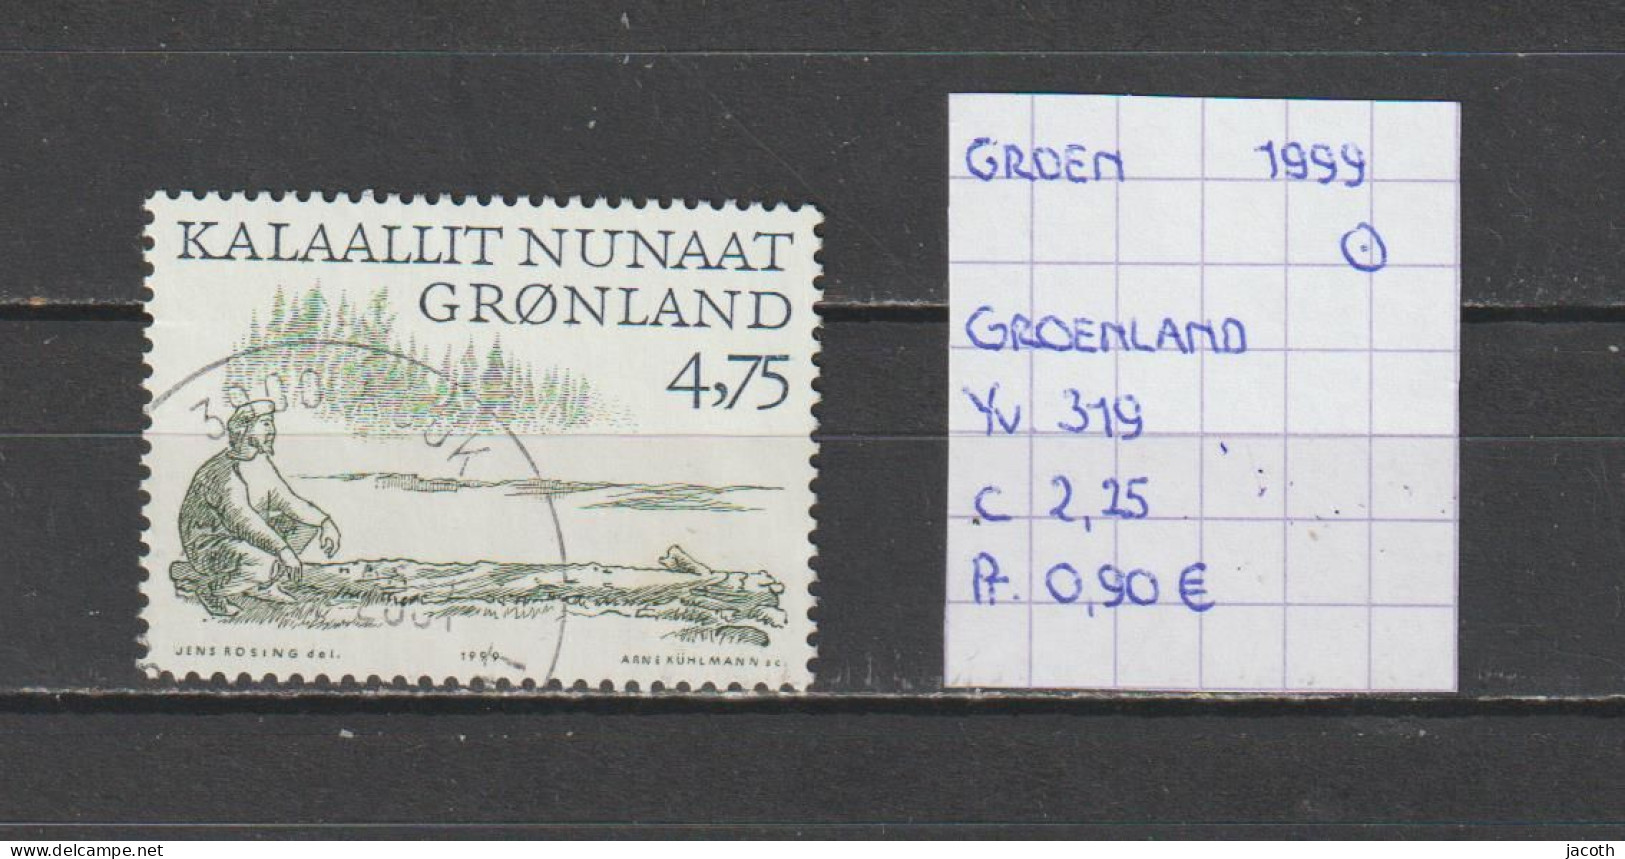 (TJ) Groenland 1999 - YT 319 (gest./obl./used) - Gebruikt